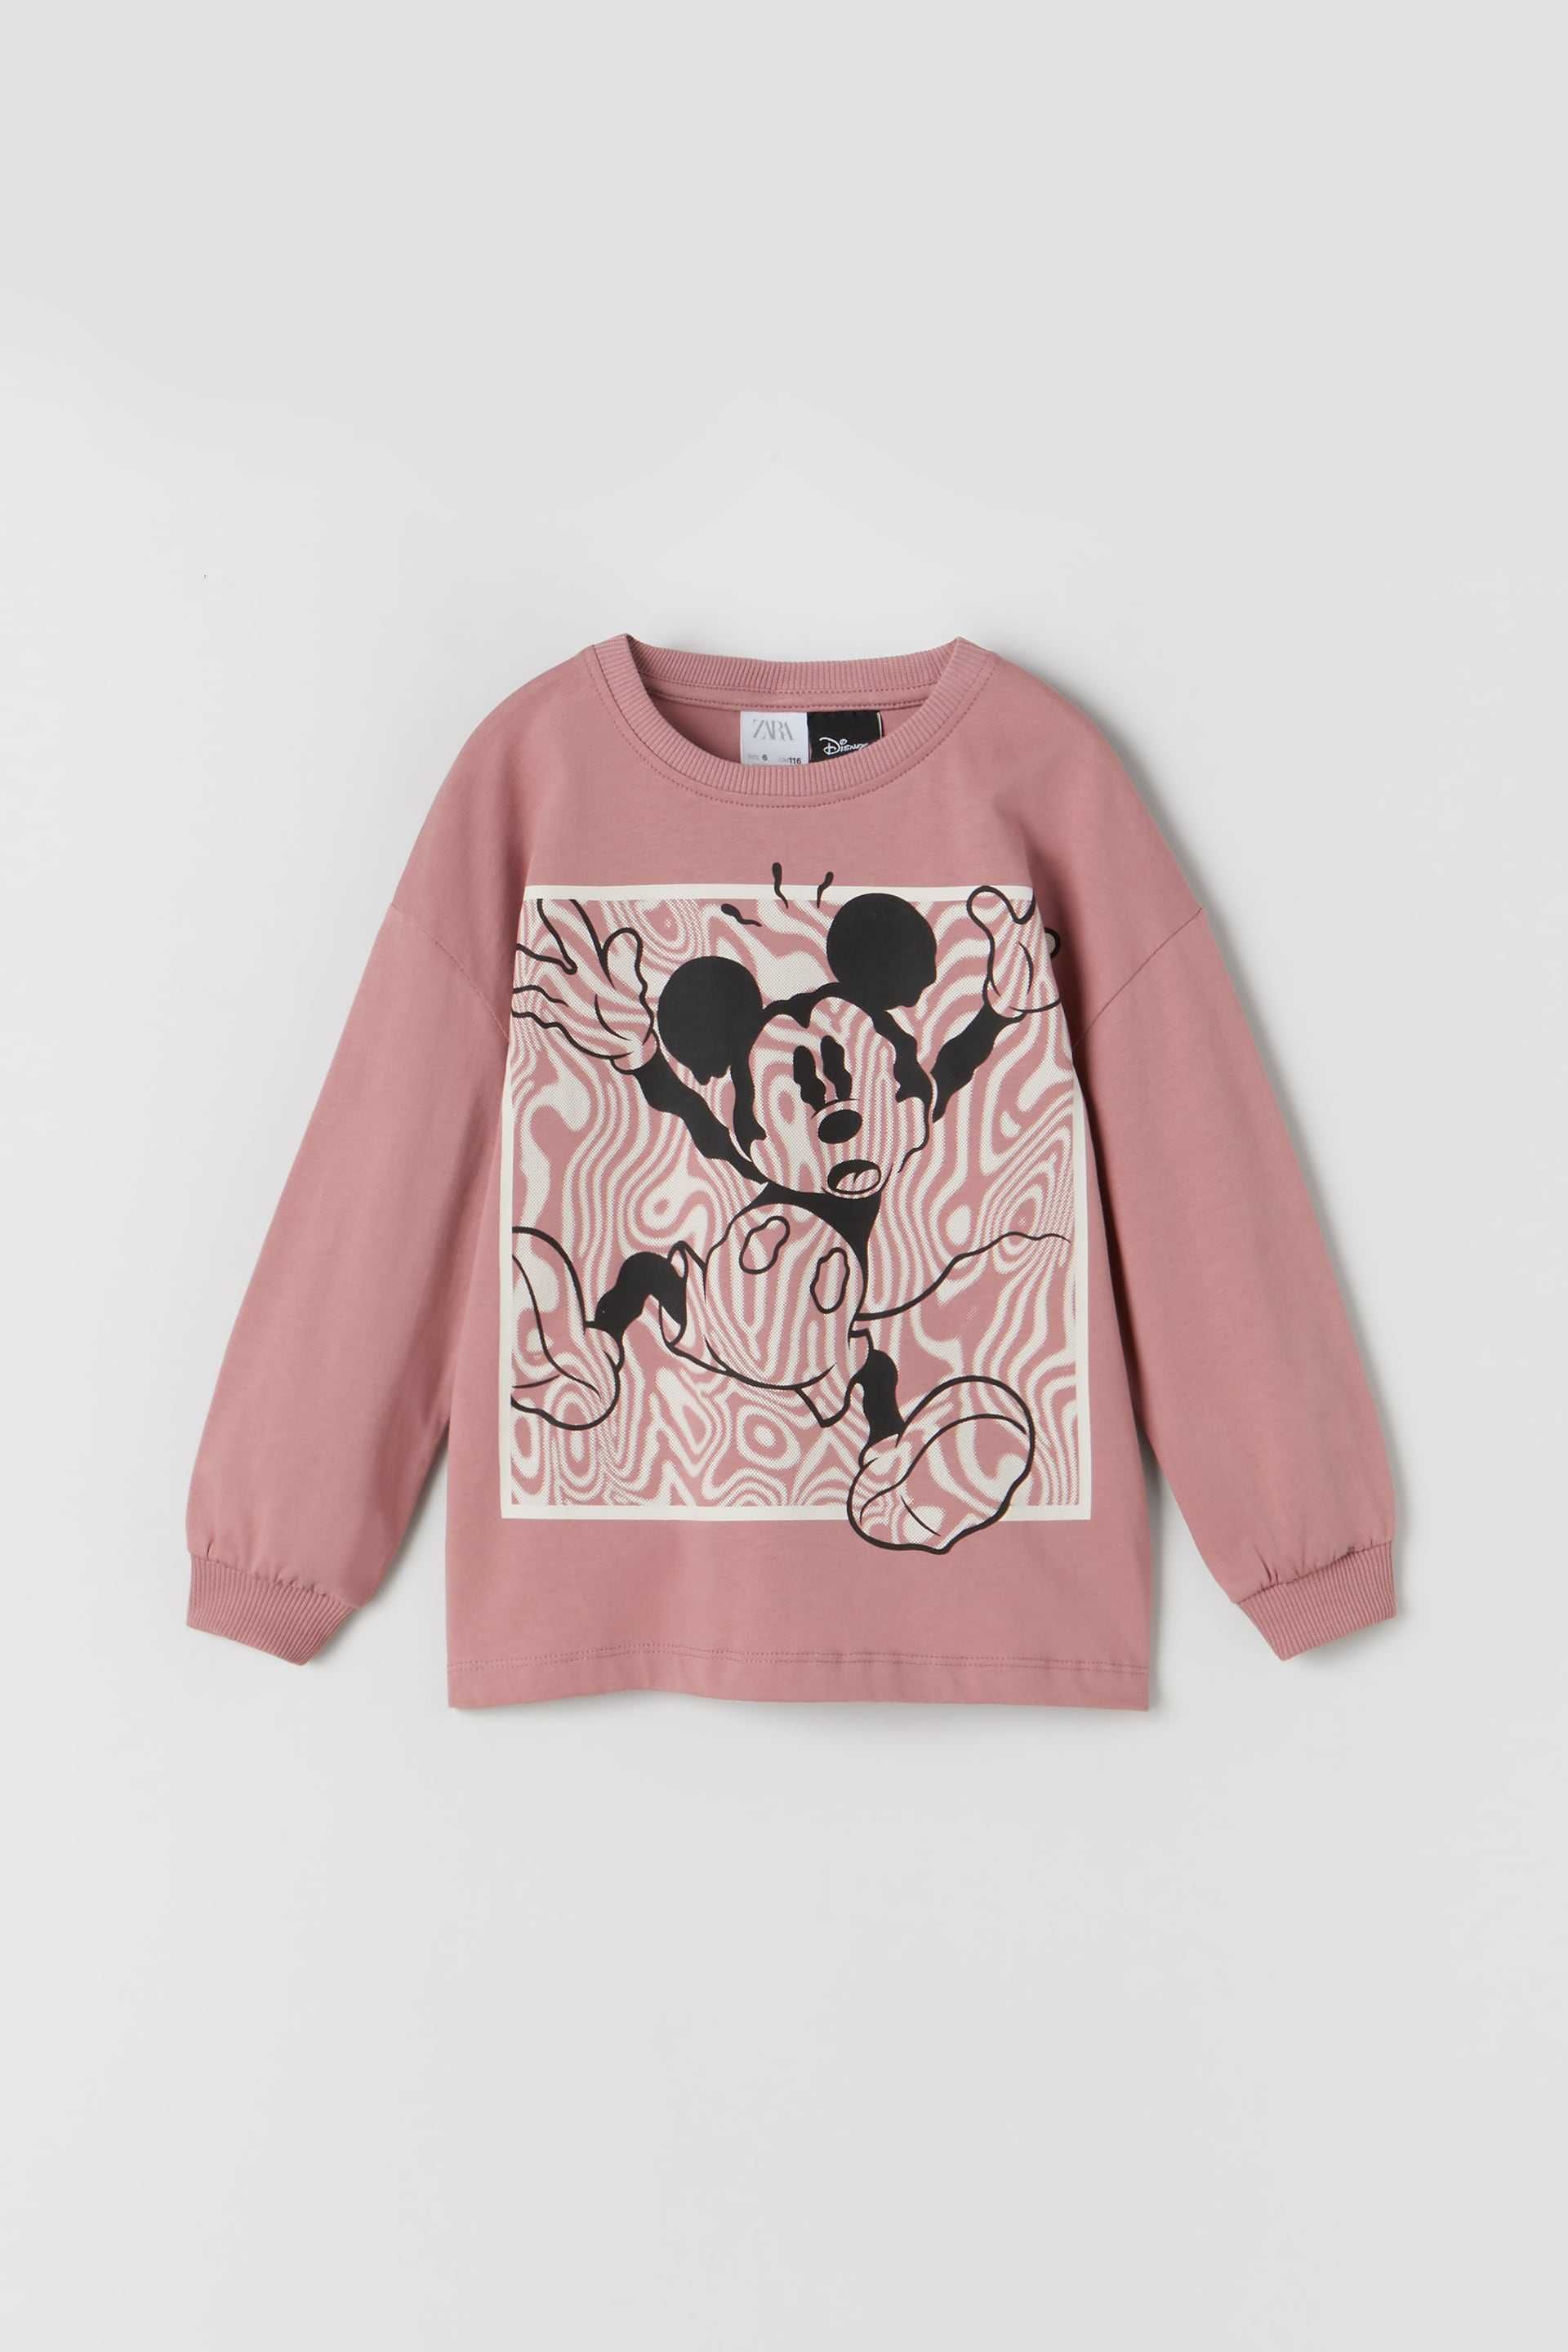 Zara bluzeczka długi rękaw t-shirt nowa 152 Mickey